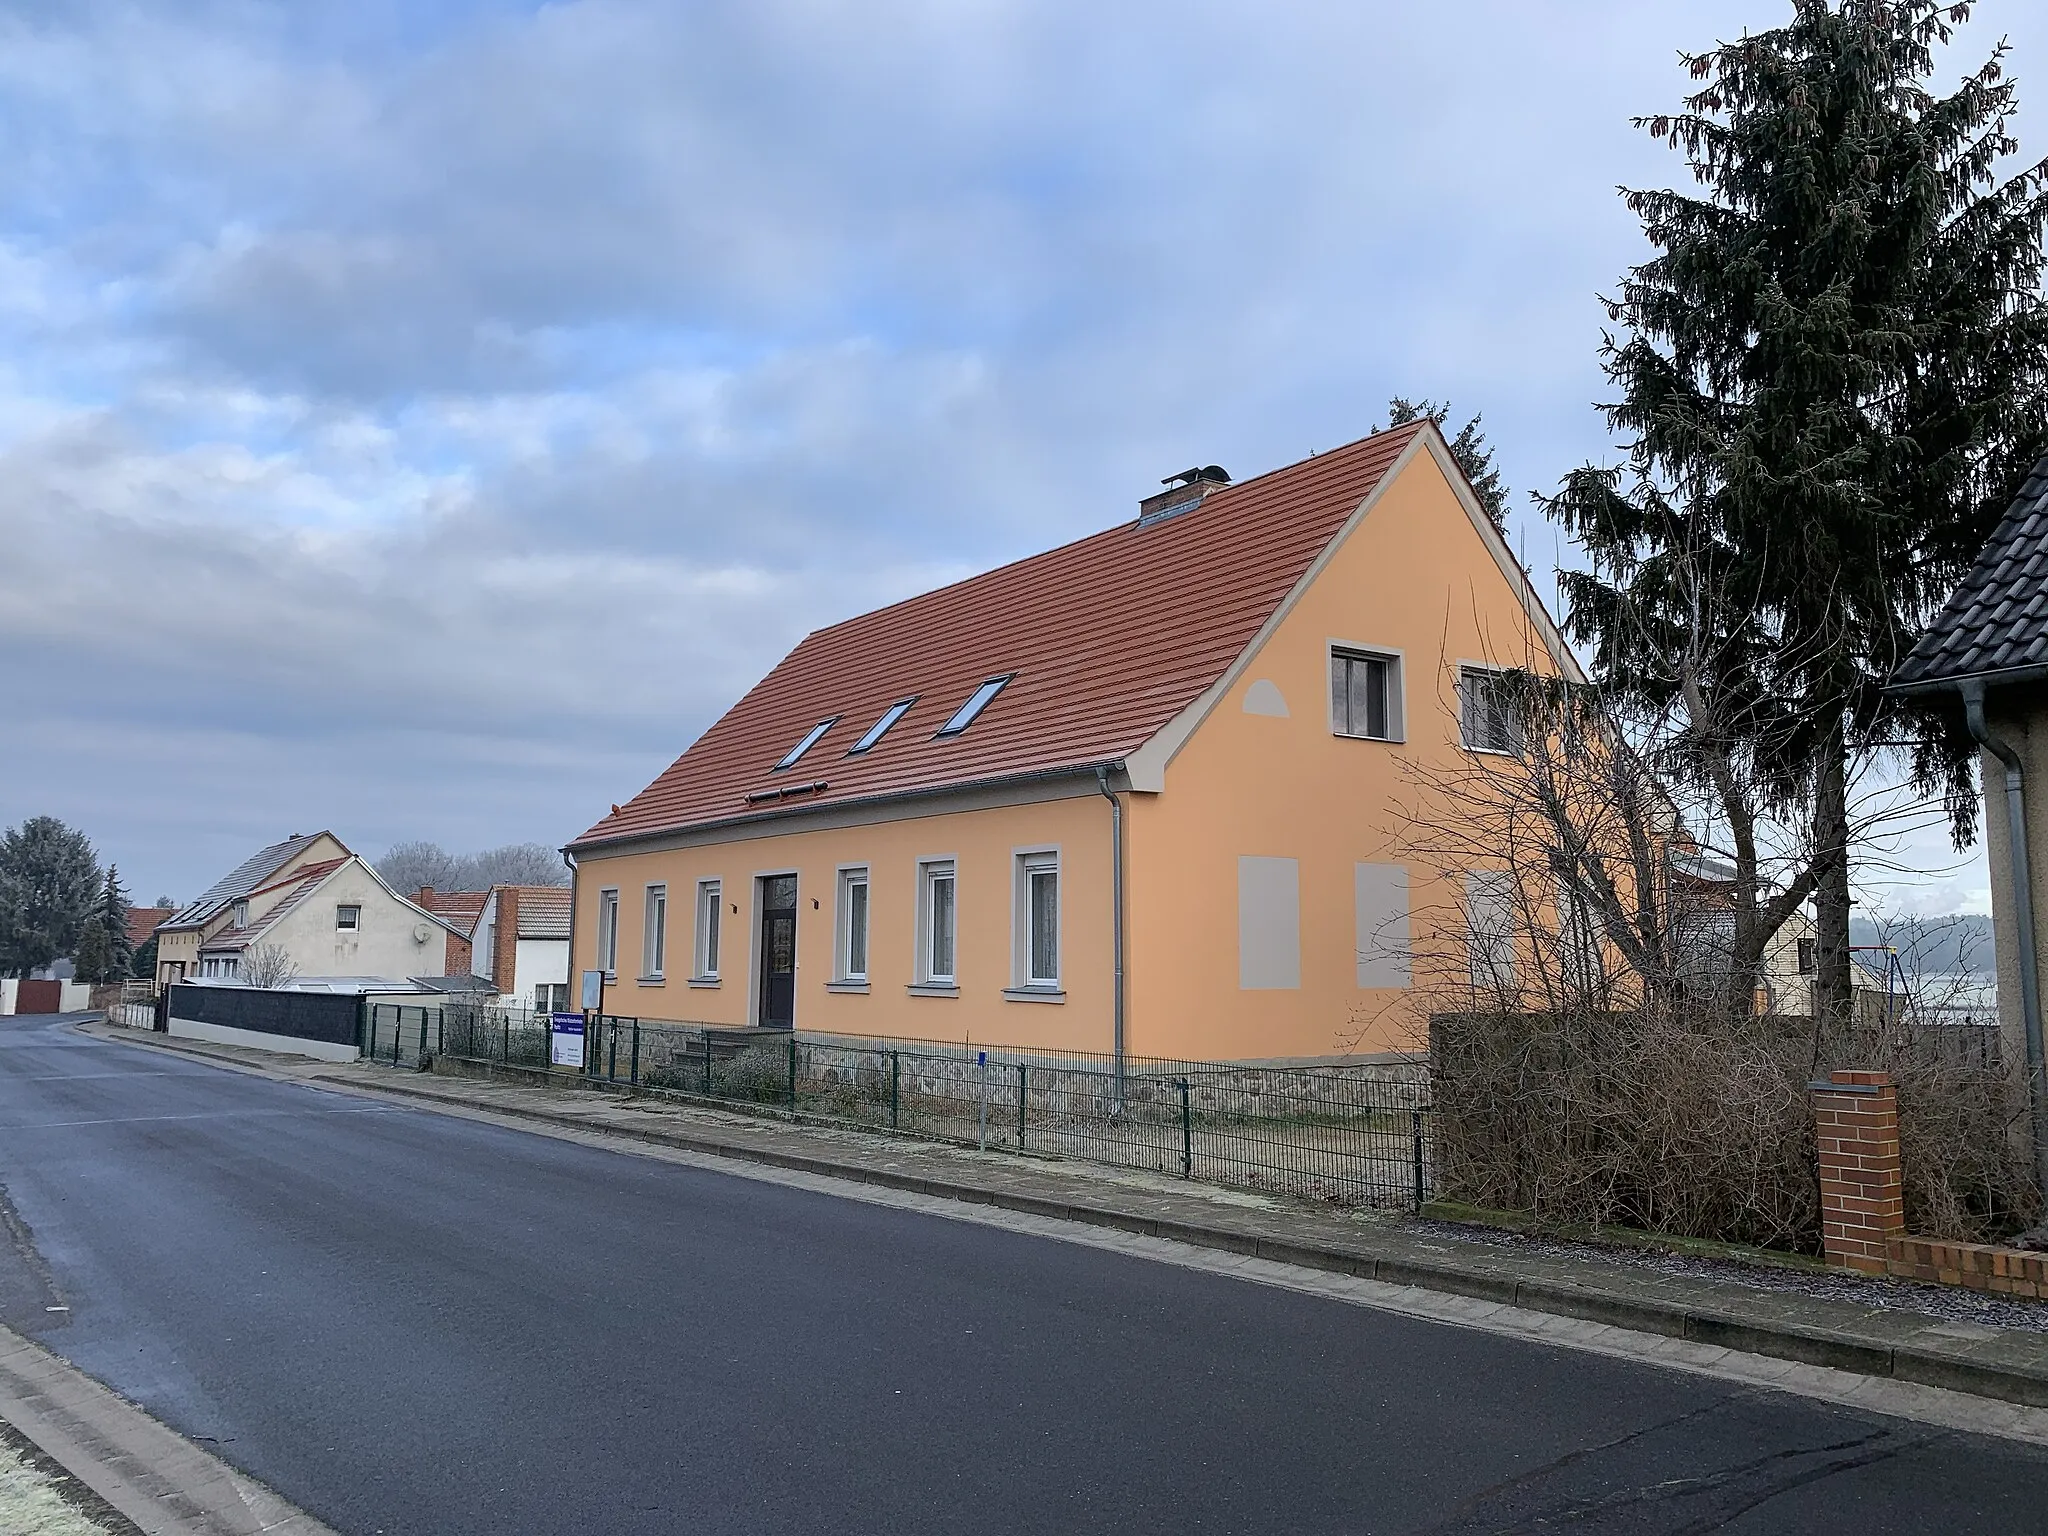 Photo showing: Paplitz, ein Ortsteil der Stadt Baruth/Mark im Landkreis Teltow-Fläming in Brandenburg